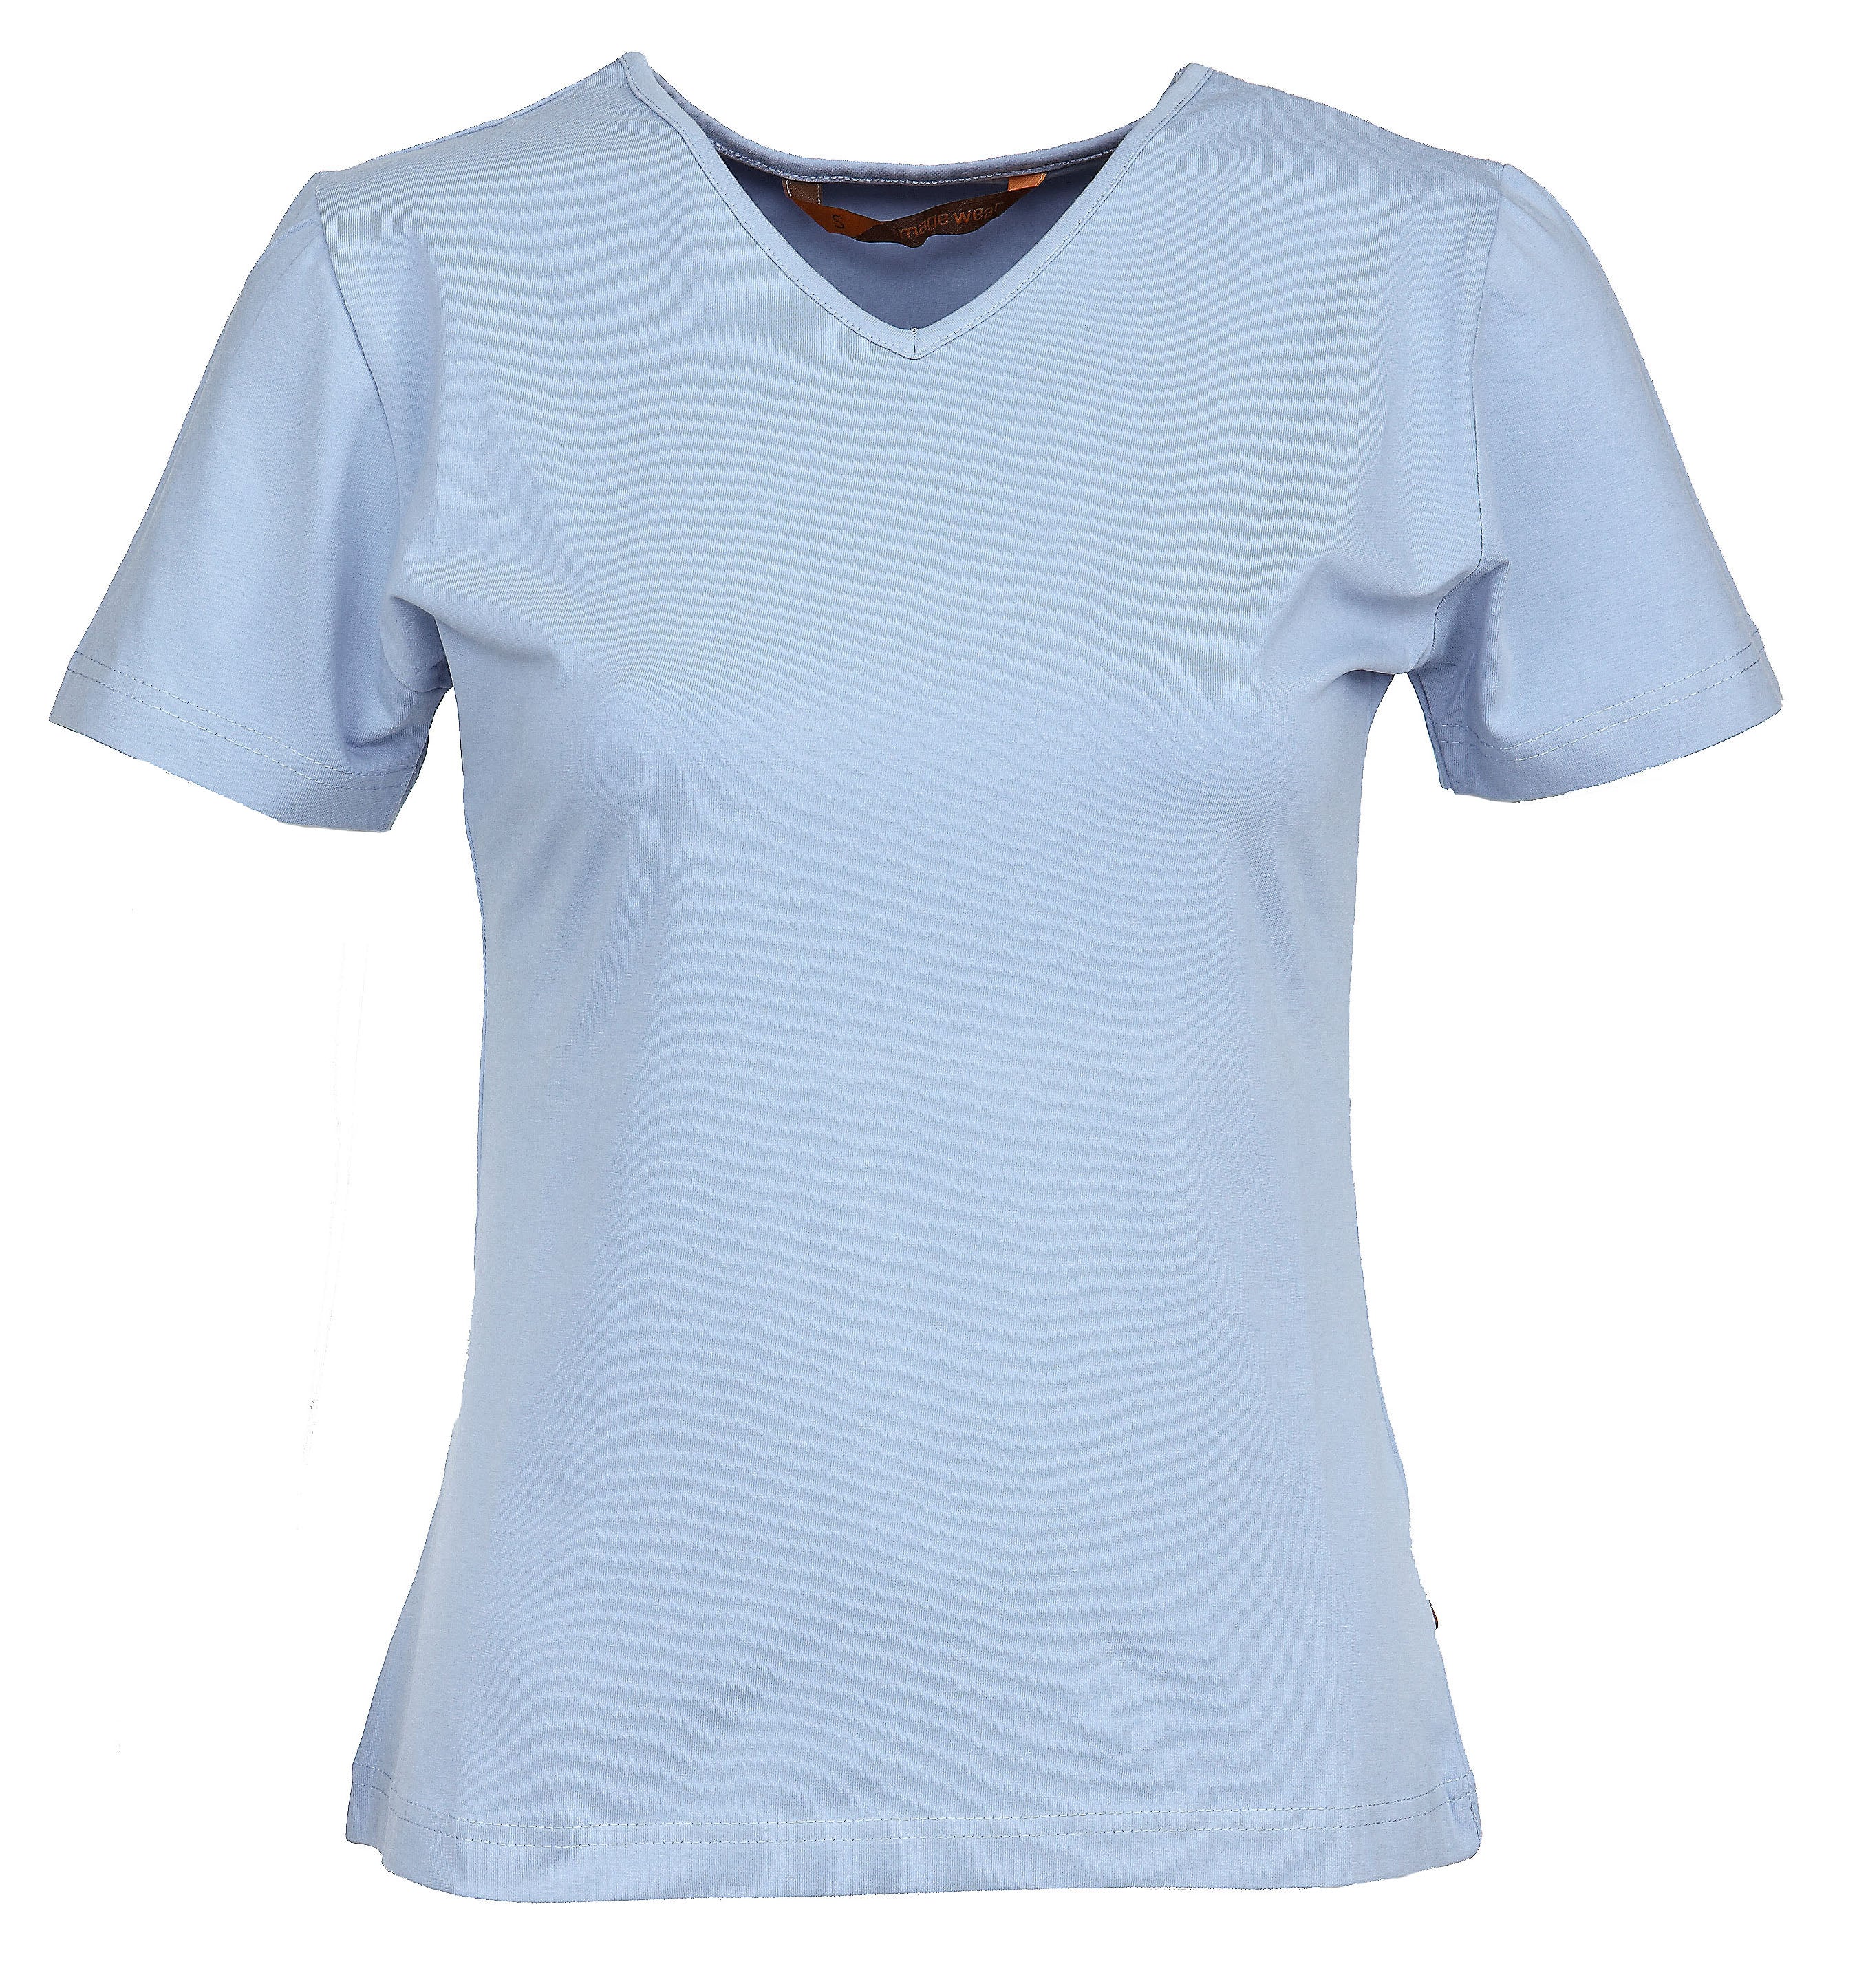 Naisten lyhythihainen vaaleansininen T-paita v-pääntiellä. Malli on aavistuksen tyköistuva. Joustava ja laadukas materiaali.